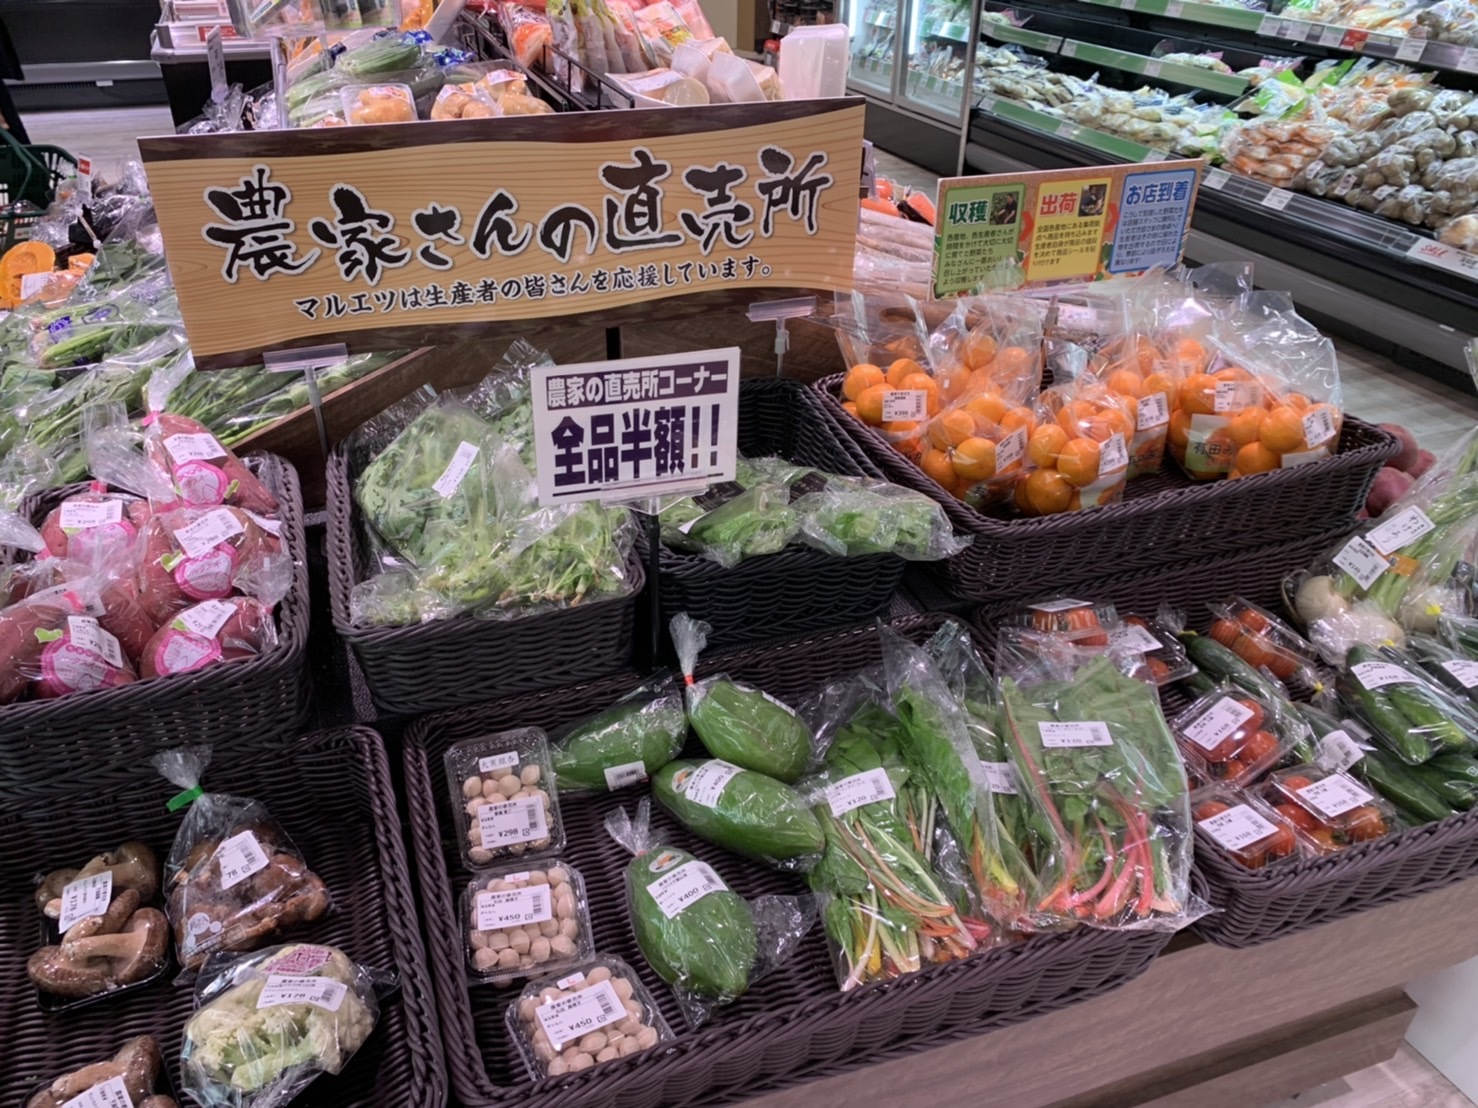 大田市場からも新鮮な野菜と、旬の果実を直送しているそうですよ！